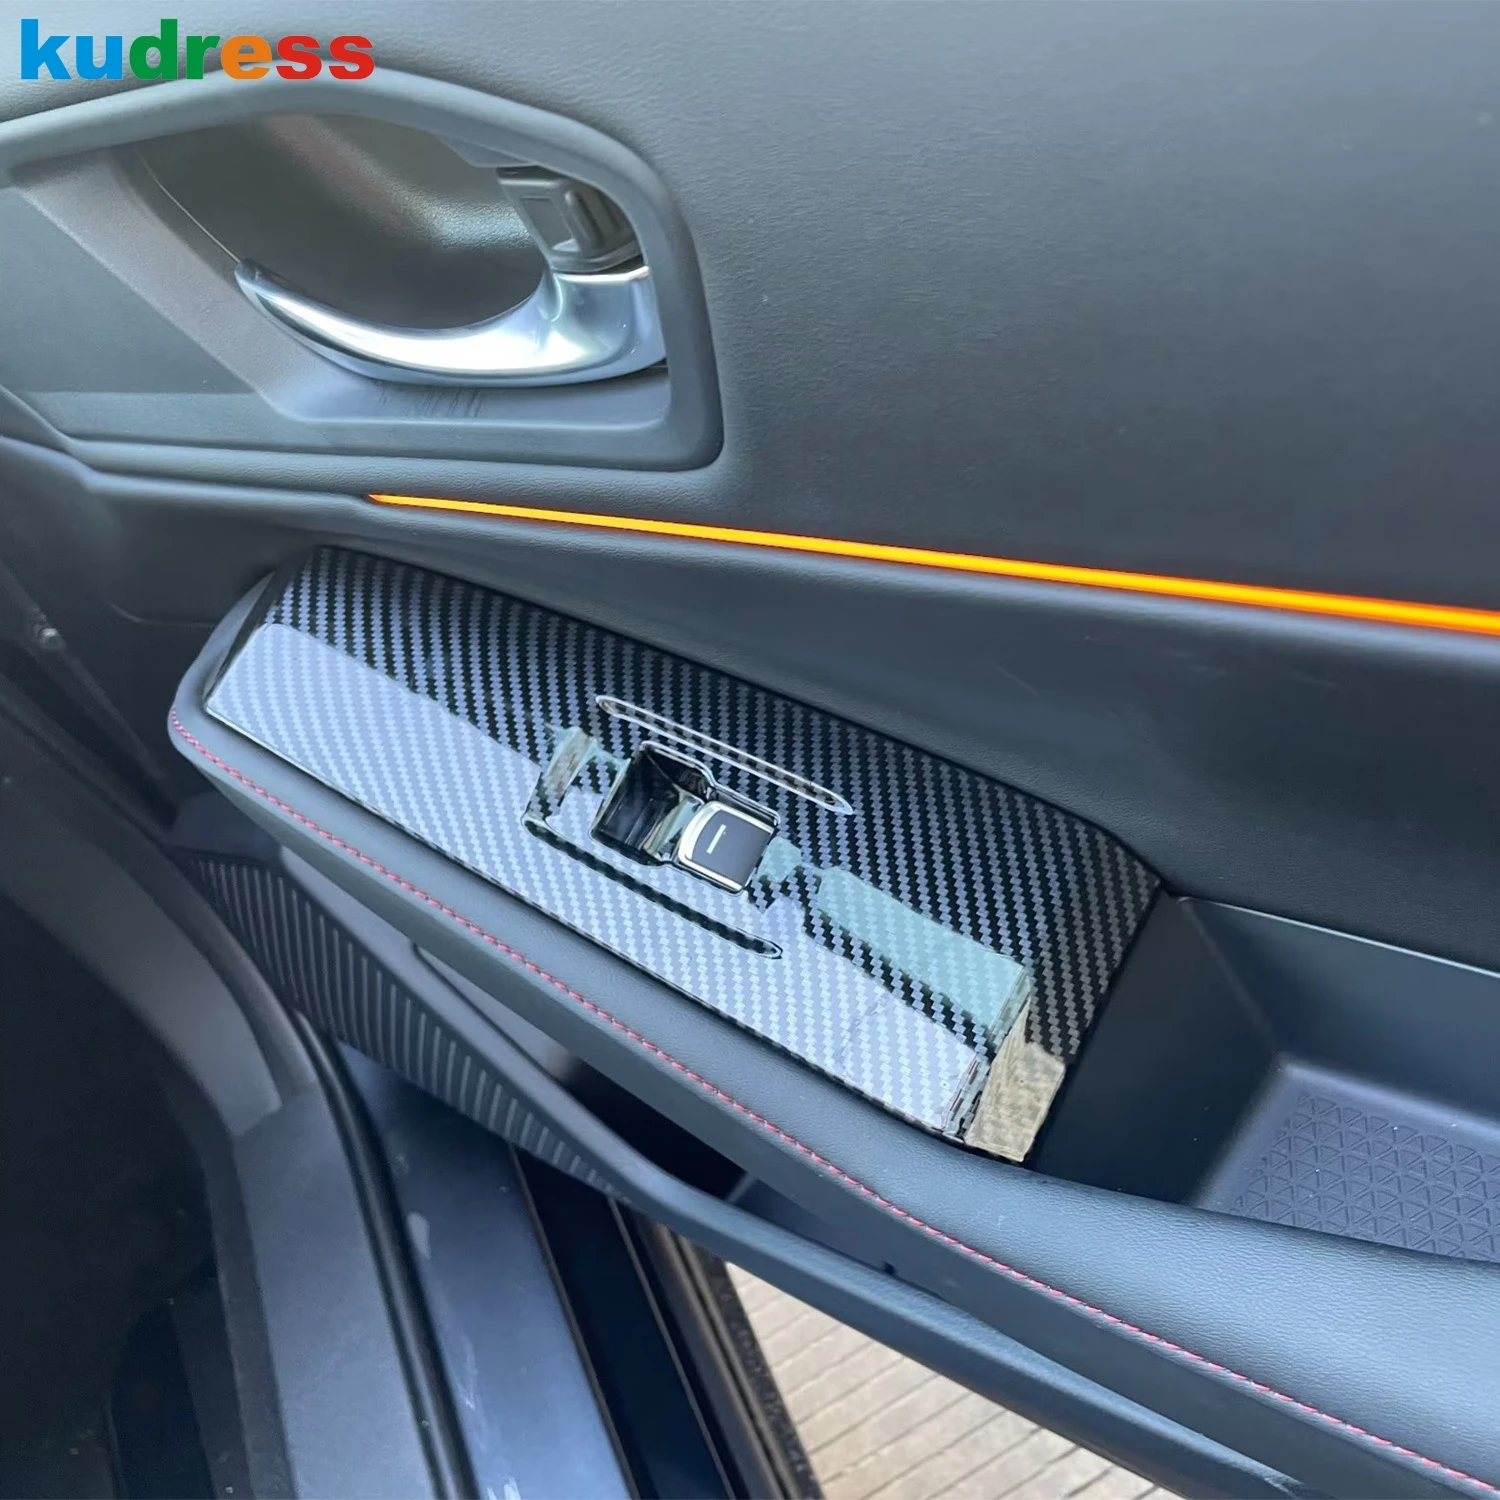 Araba Kapı Kol Dayama Cam Kaldırma Anahtarı Düğmesi Paneli Kapak Trim İçin Honda Accord Sedan 2023 2024 Karbon Fiber İç Aksesuarları